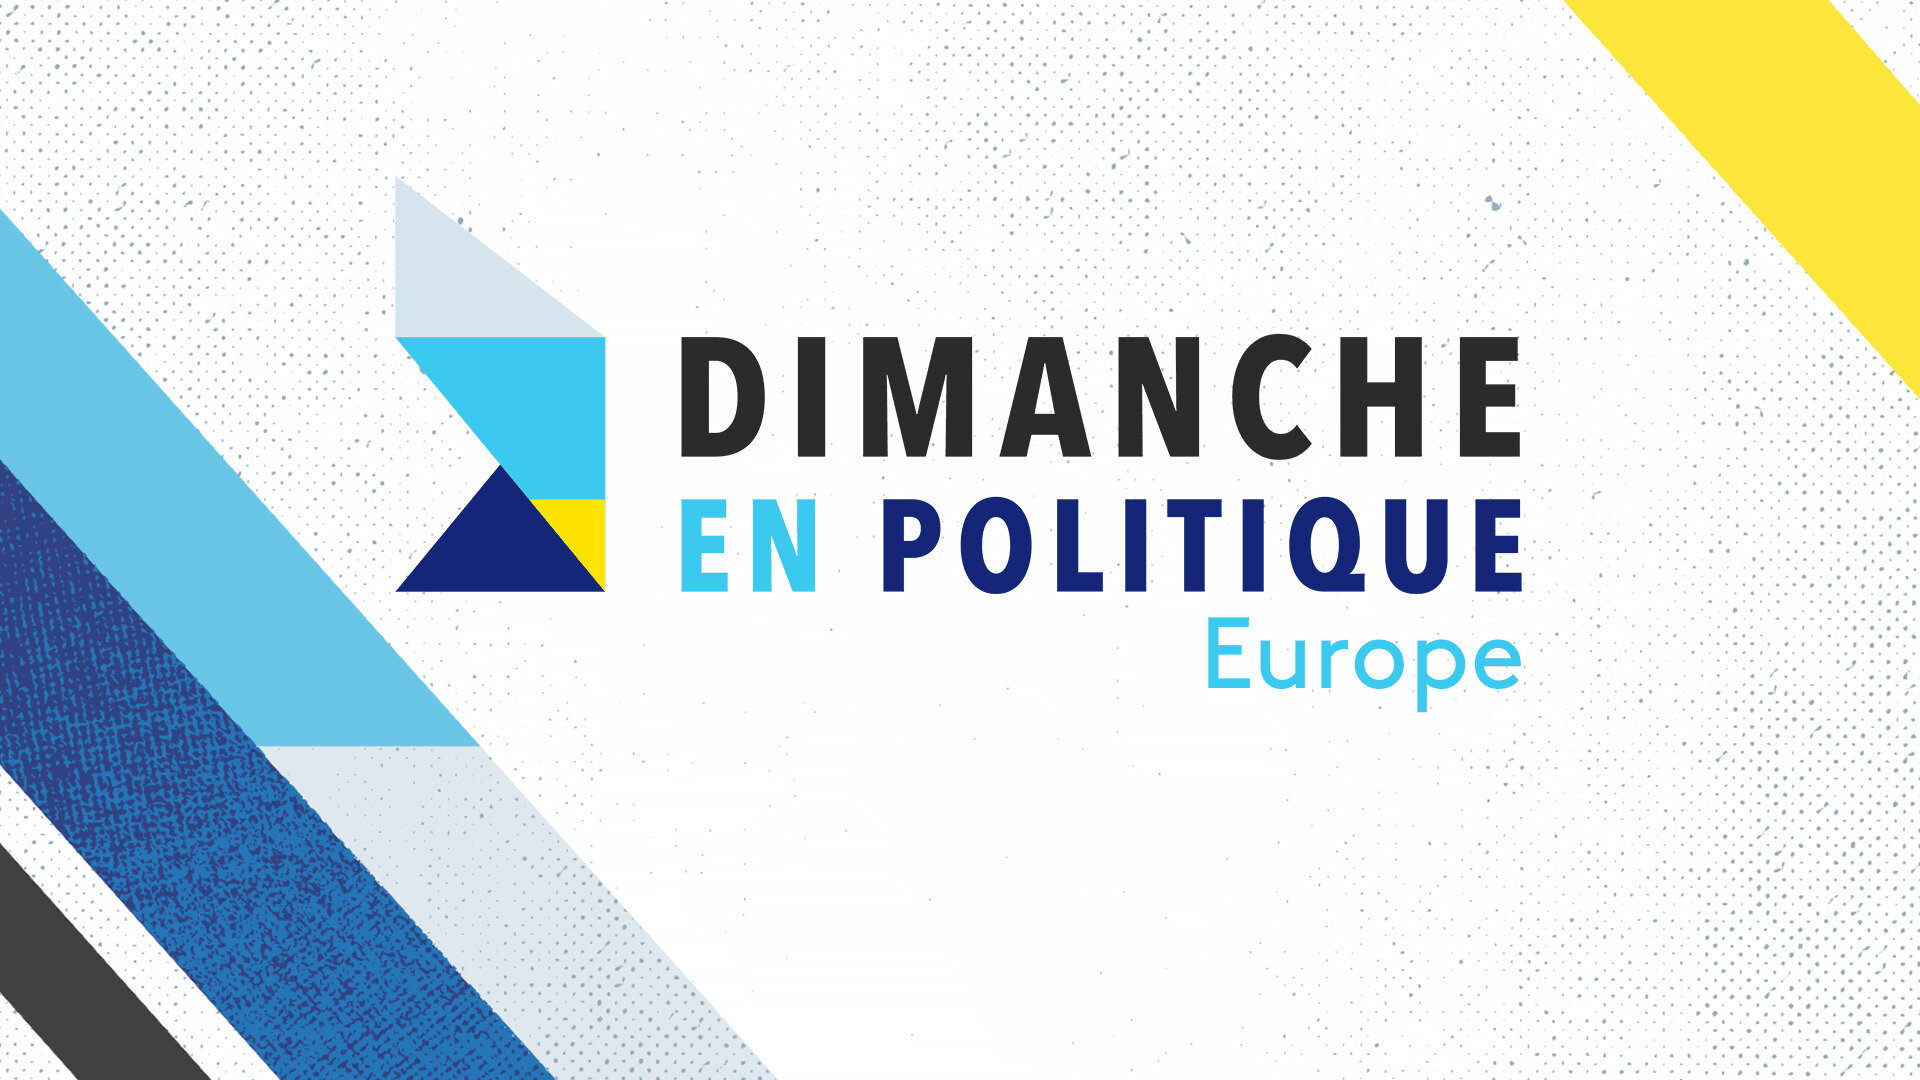 Dimanche en politique - Europe : Présidence de l'union européenne : une ambition française